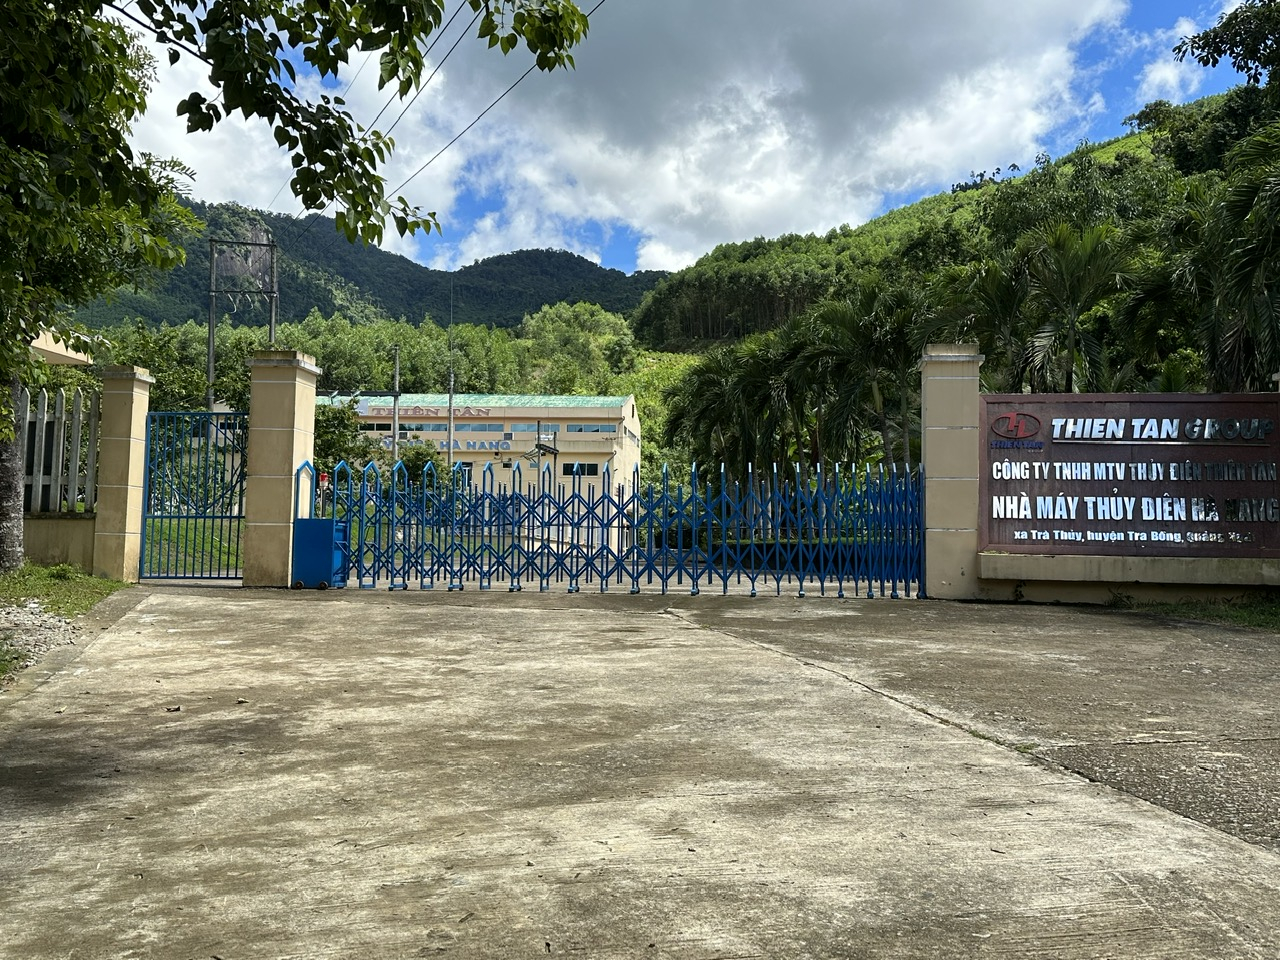 Thủy điện Hà Nang của Công ty TNHH MTV Thiên Tân được xây dựng ở thôn 5, xã Trà Thủy (Trà Bồng, Quảng Ngãi). Ảnh: L.K.